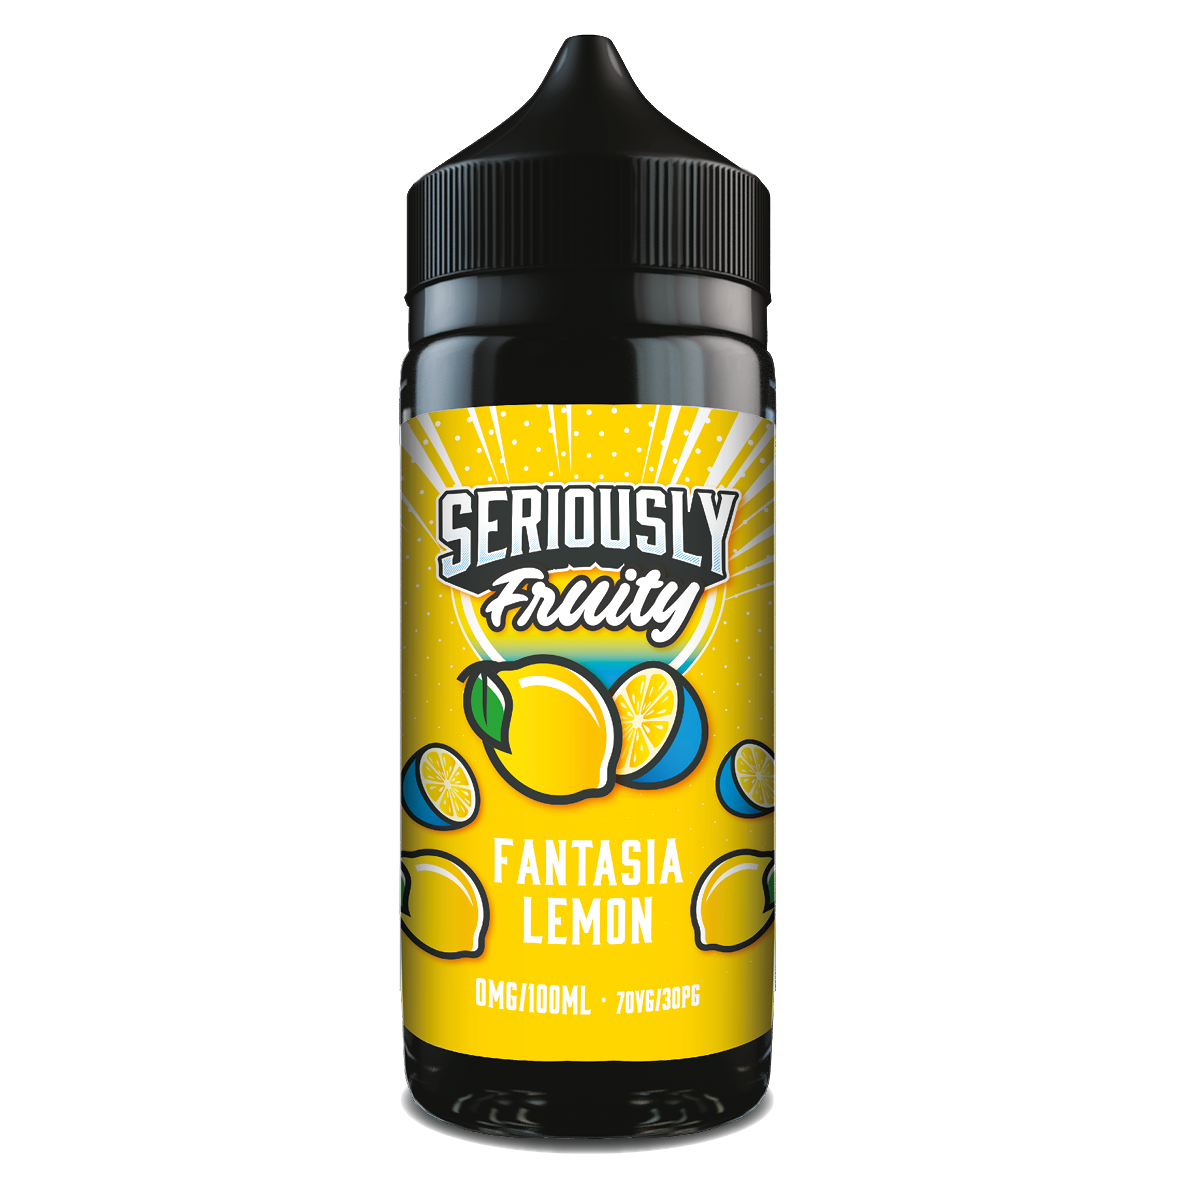 Doozy Vape Seriously Fruity: Fantasia Lemon 0mg 100ml Shortfill E-Liquid